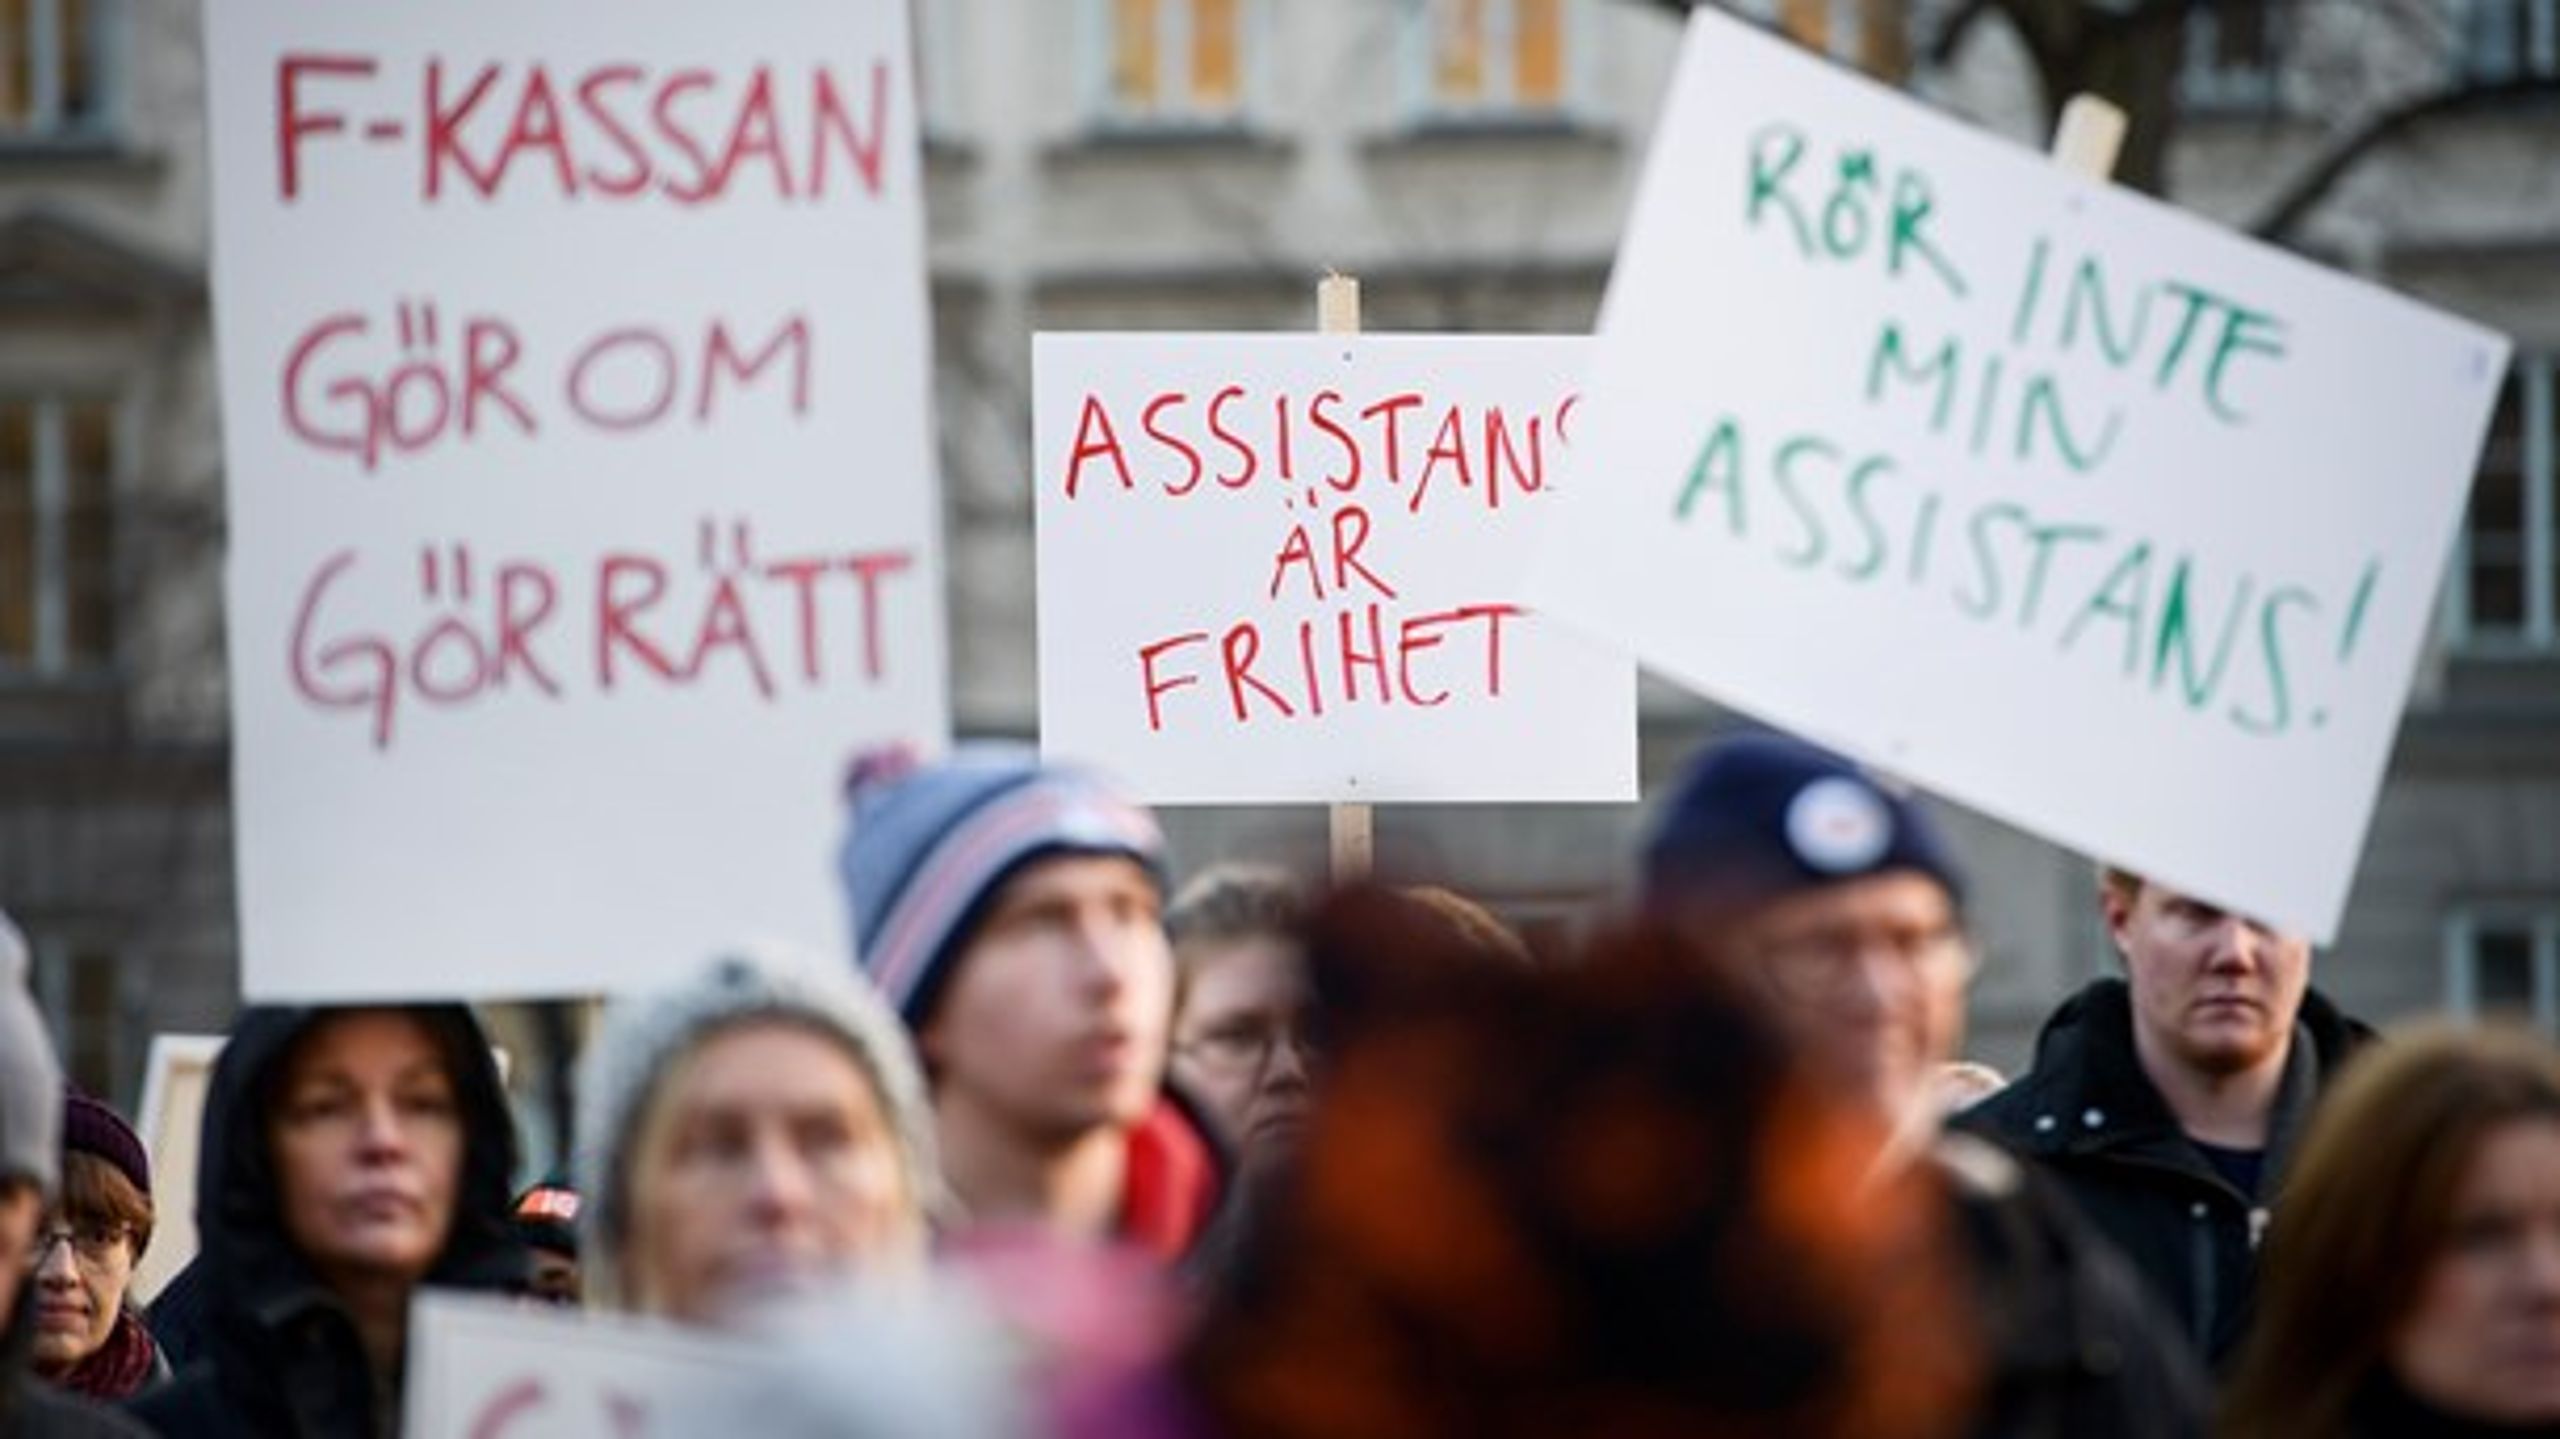 Stockholm december 2016, demonstrationer hölls runtom i Sverige mot nedskärningarna av personlig assistans. Låt inte denna grupp prioriteras ned även denna gång, skriver debattörerna.